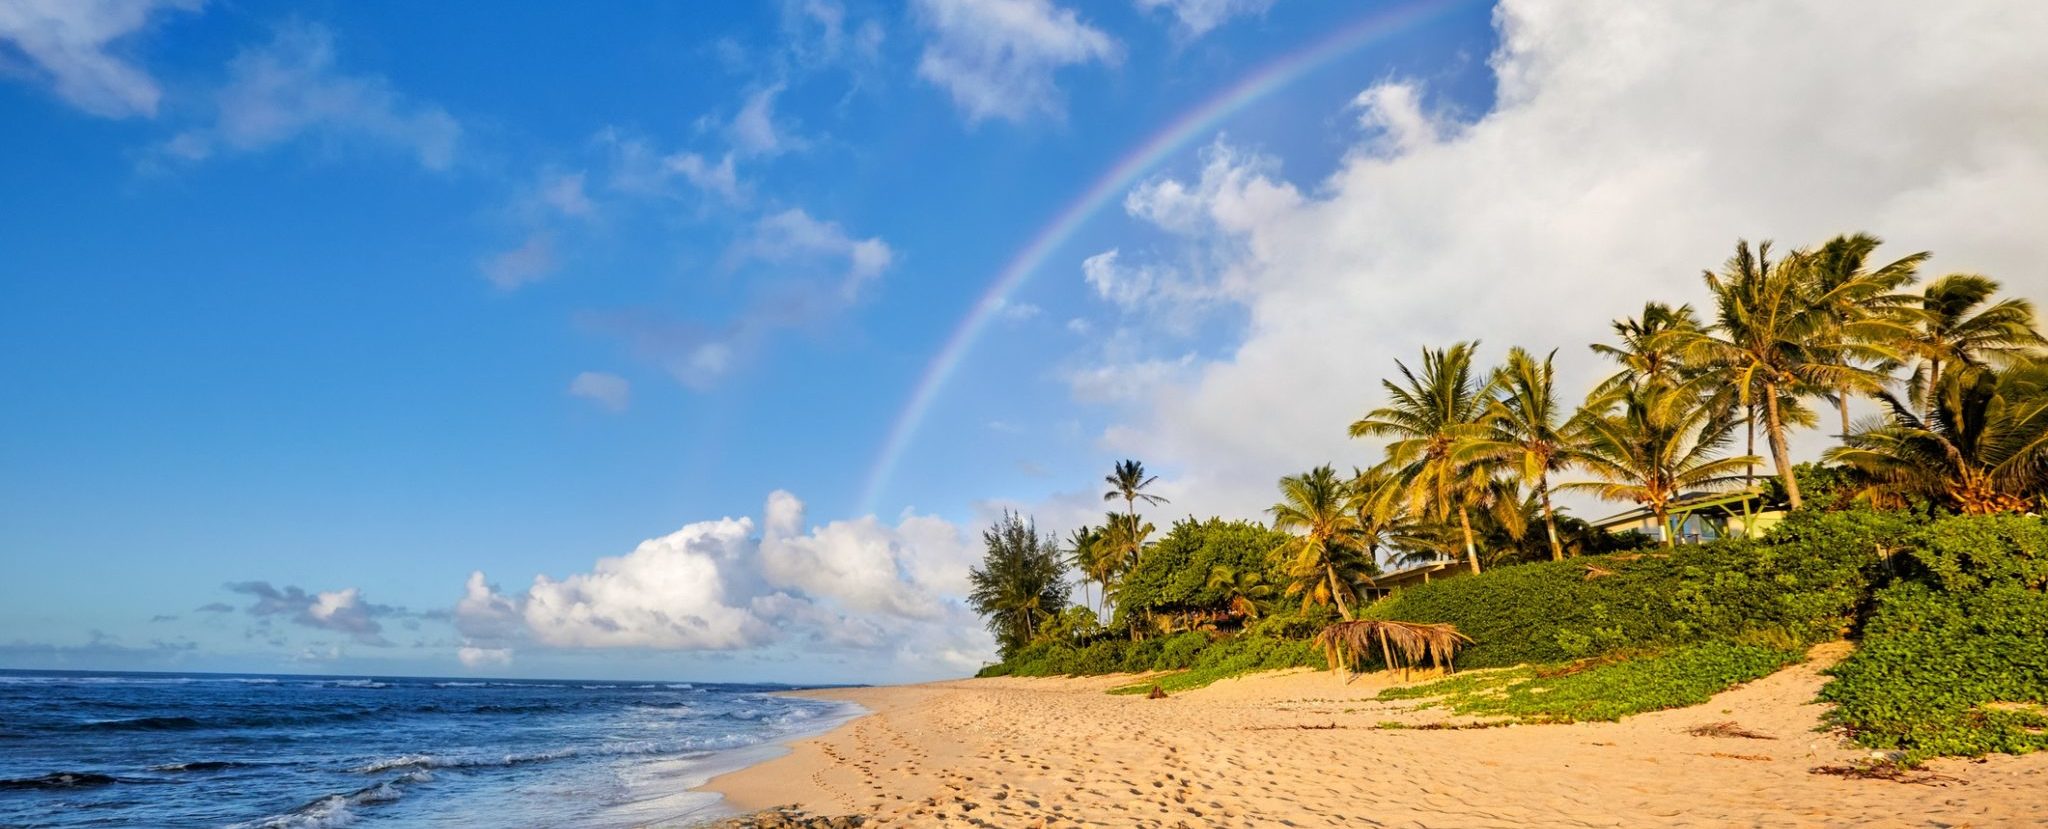 Rainbow over Oahu island, Hawaii.